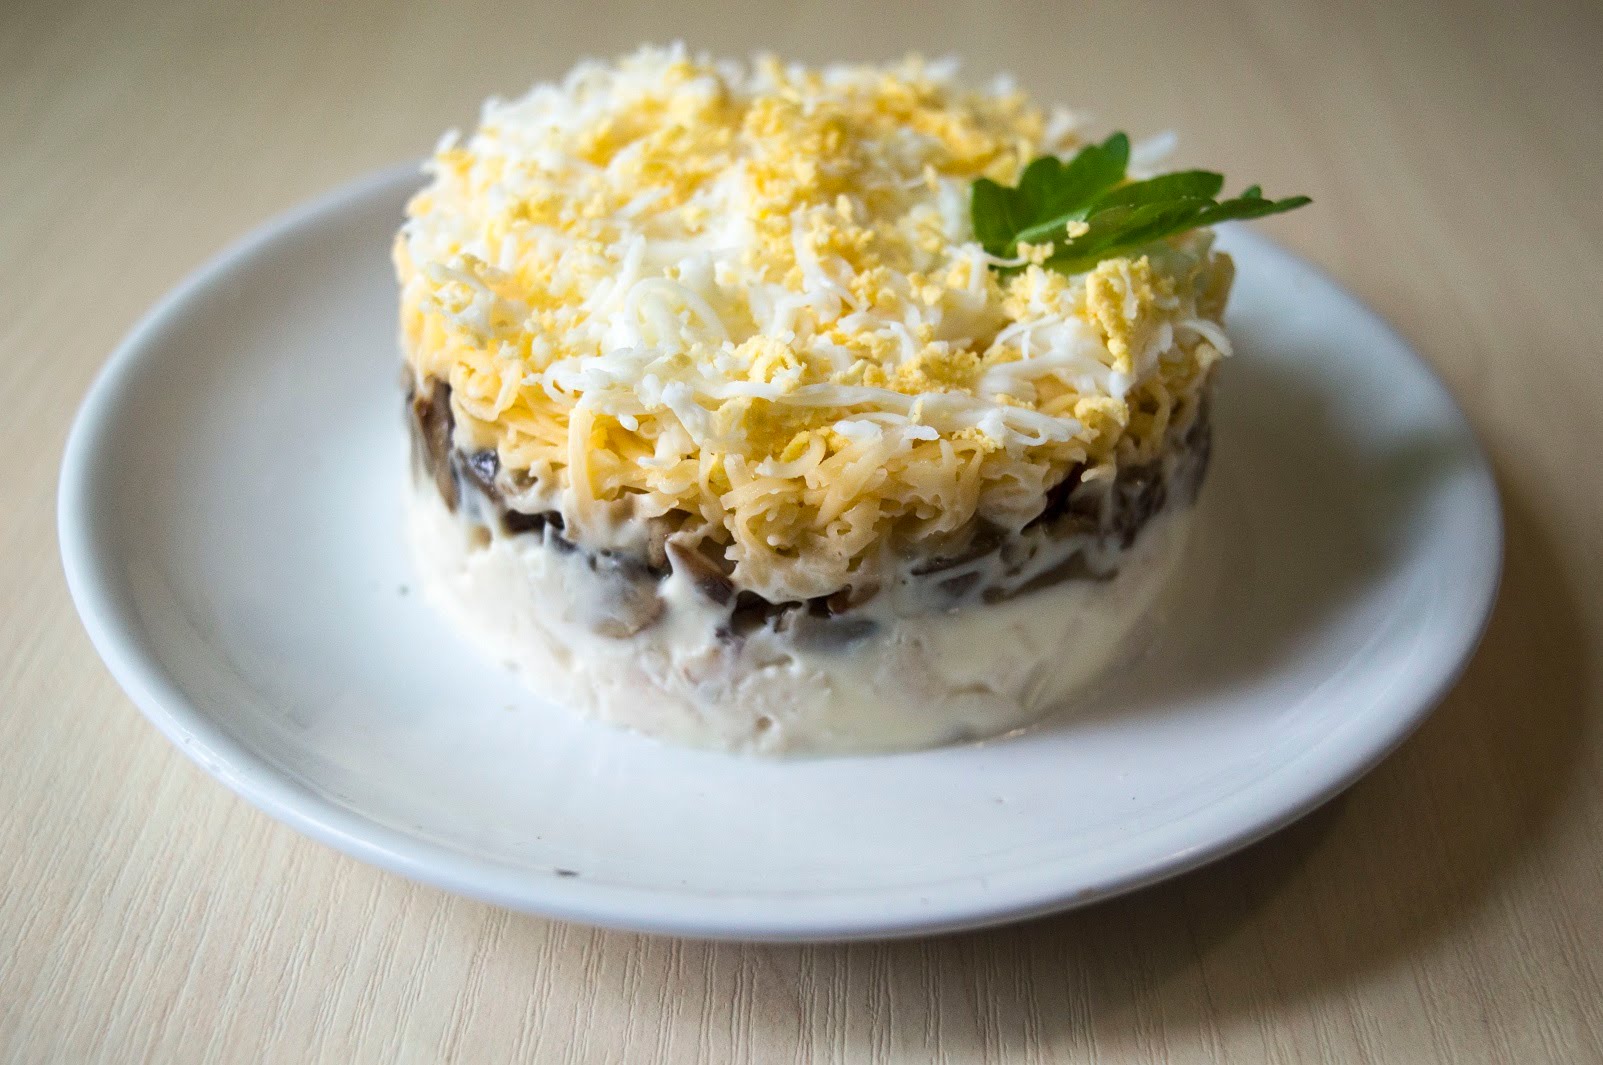 Салат с грибами и курицей и сыром – быстро, дешево и вкусно: рецепт с фото и видео